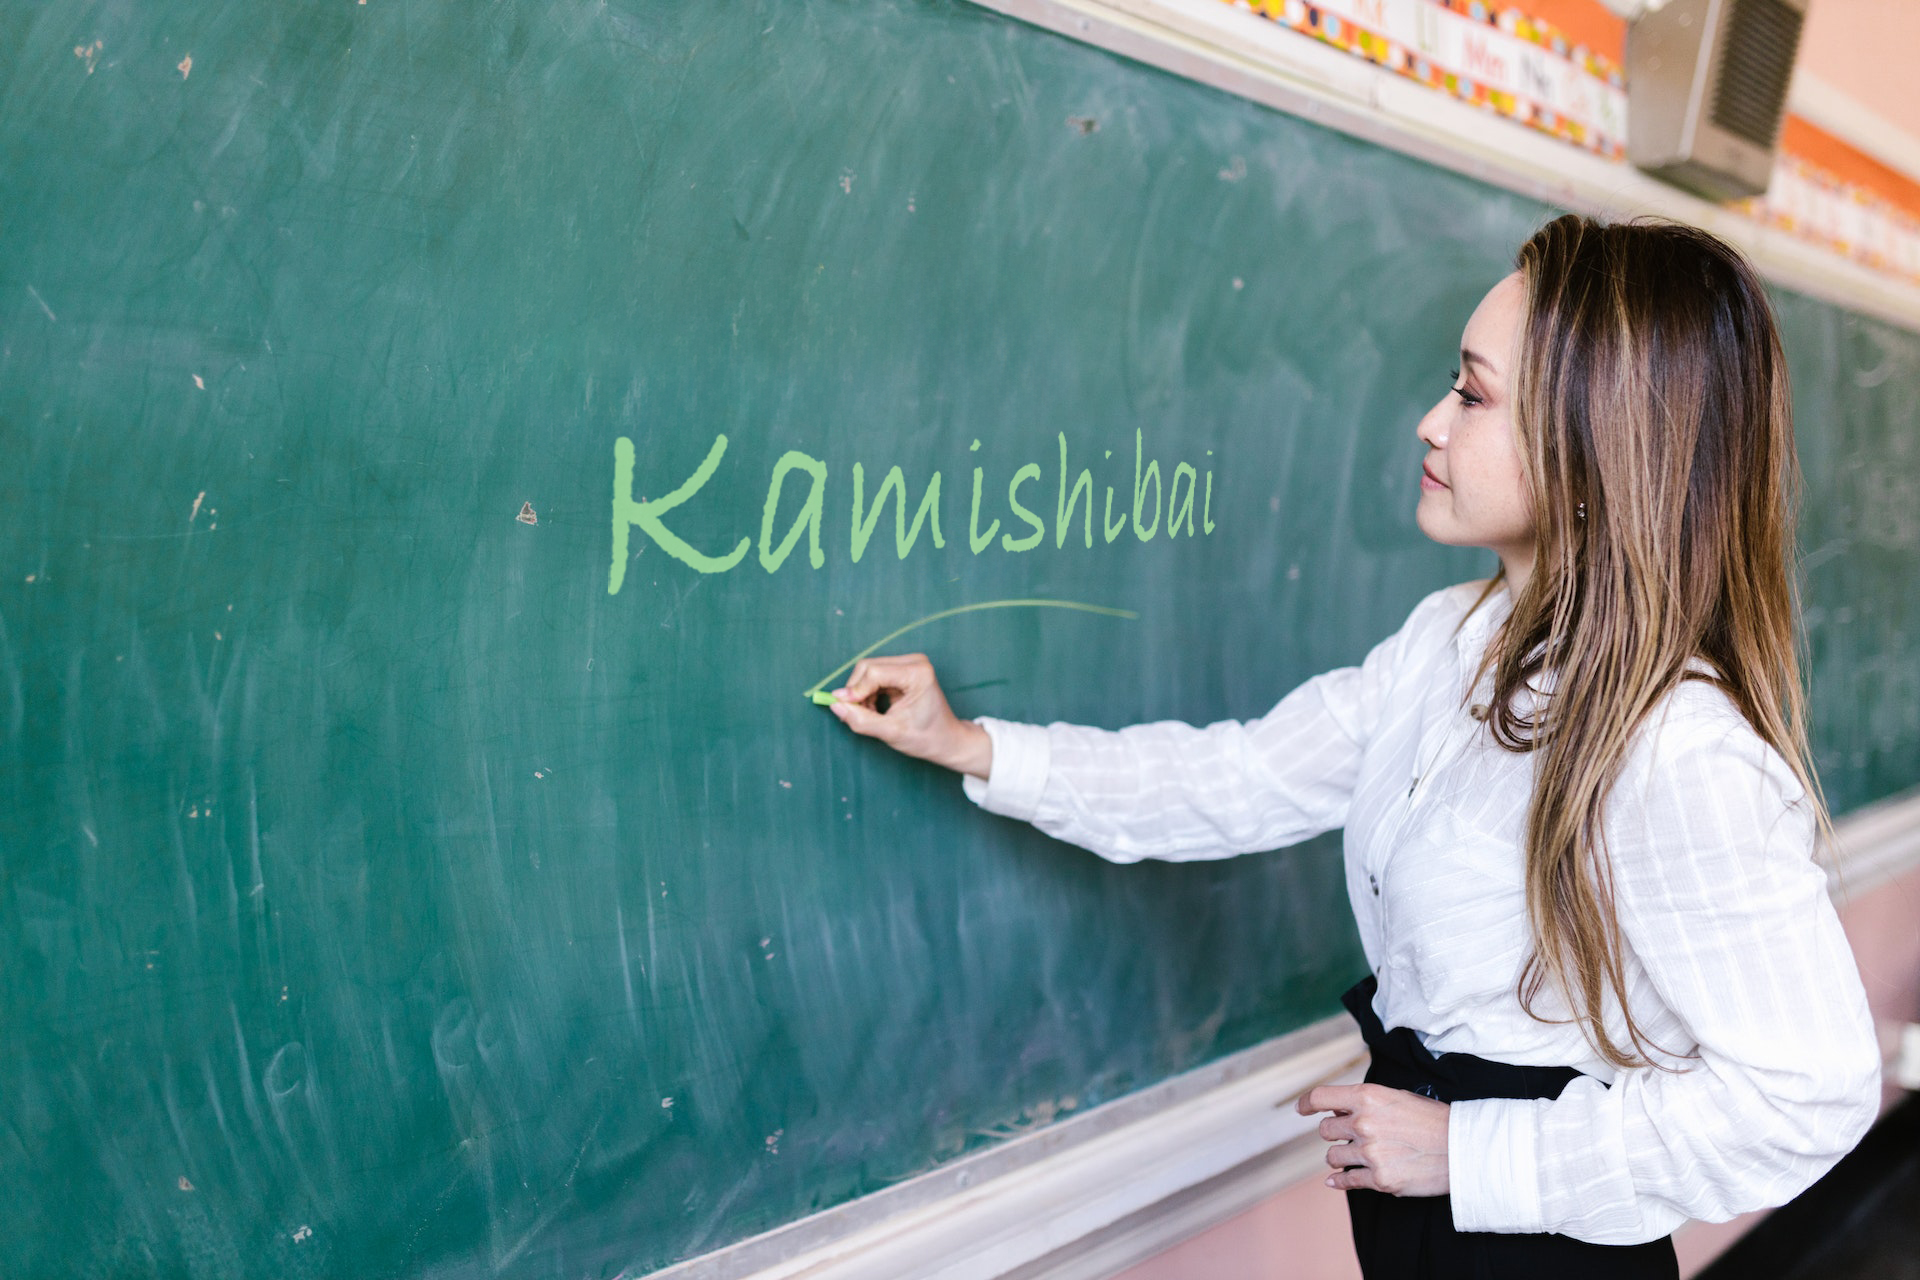 Nauczycielka zapisuje na tablicy słowo Kamishibai.